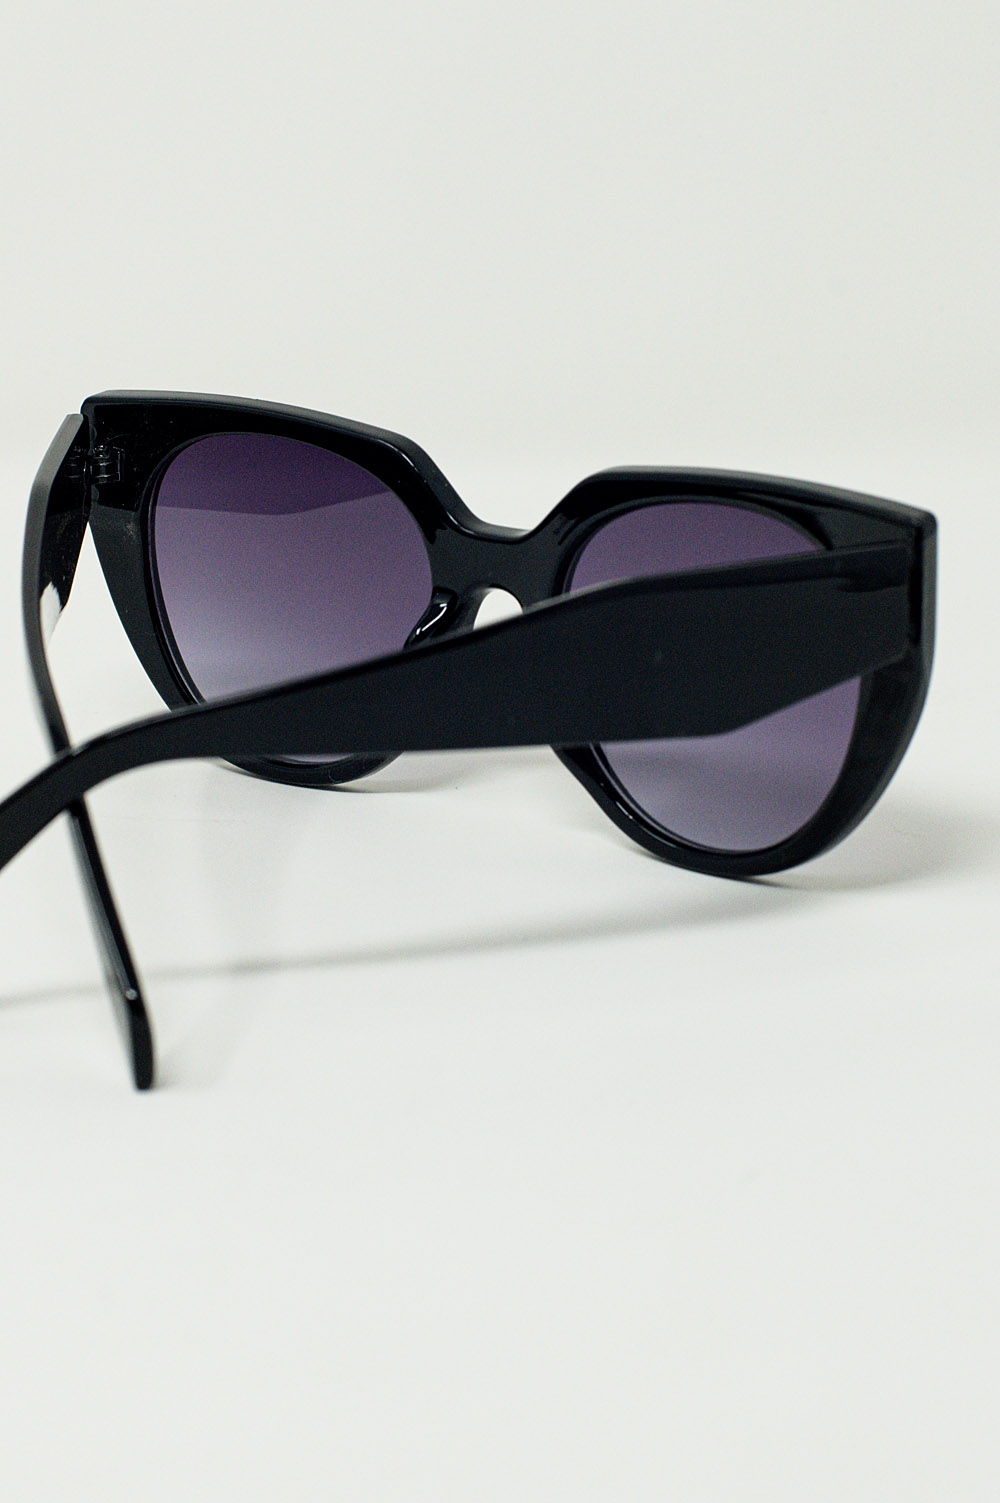 Gafas de sol estilo ojo de gato extragrandes con ribete ancho en negro.